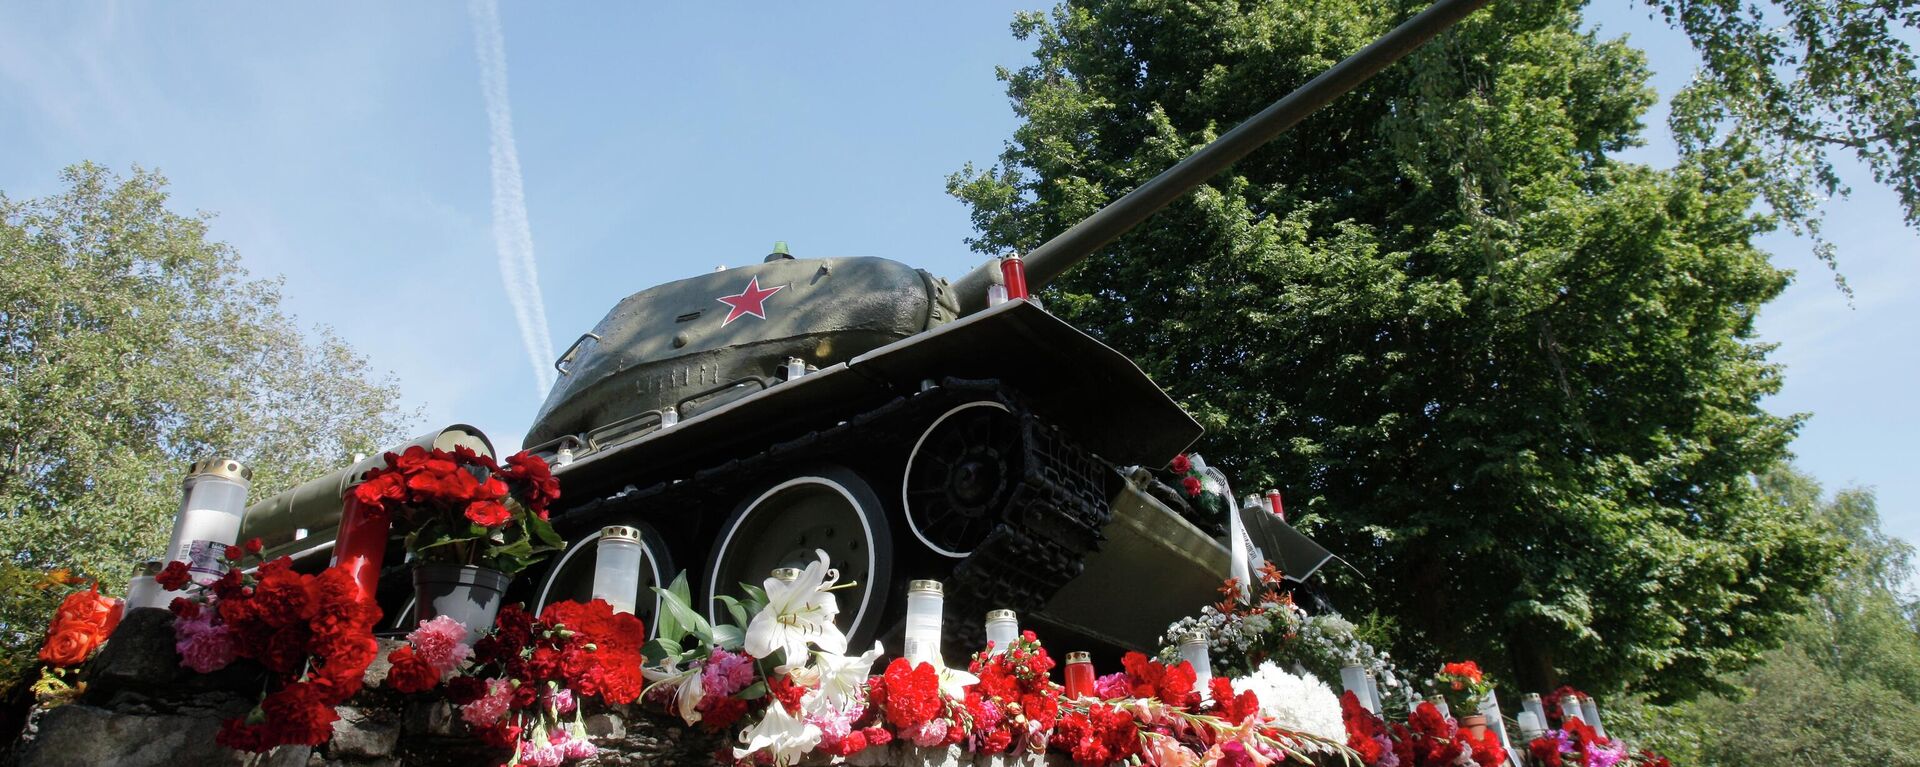 Танк Т-34, установленный между Нарвой и Нарва-Йыэсуу, архивное фото - Sputnik Литва, 1920, 17.08.2022